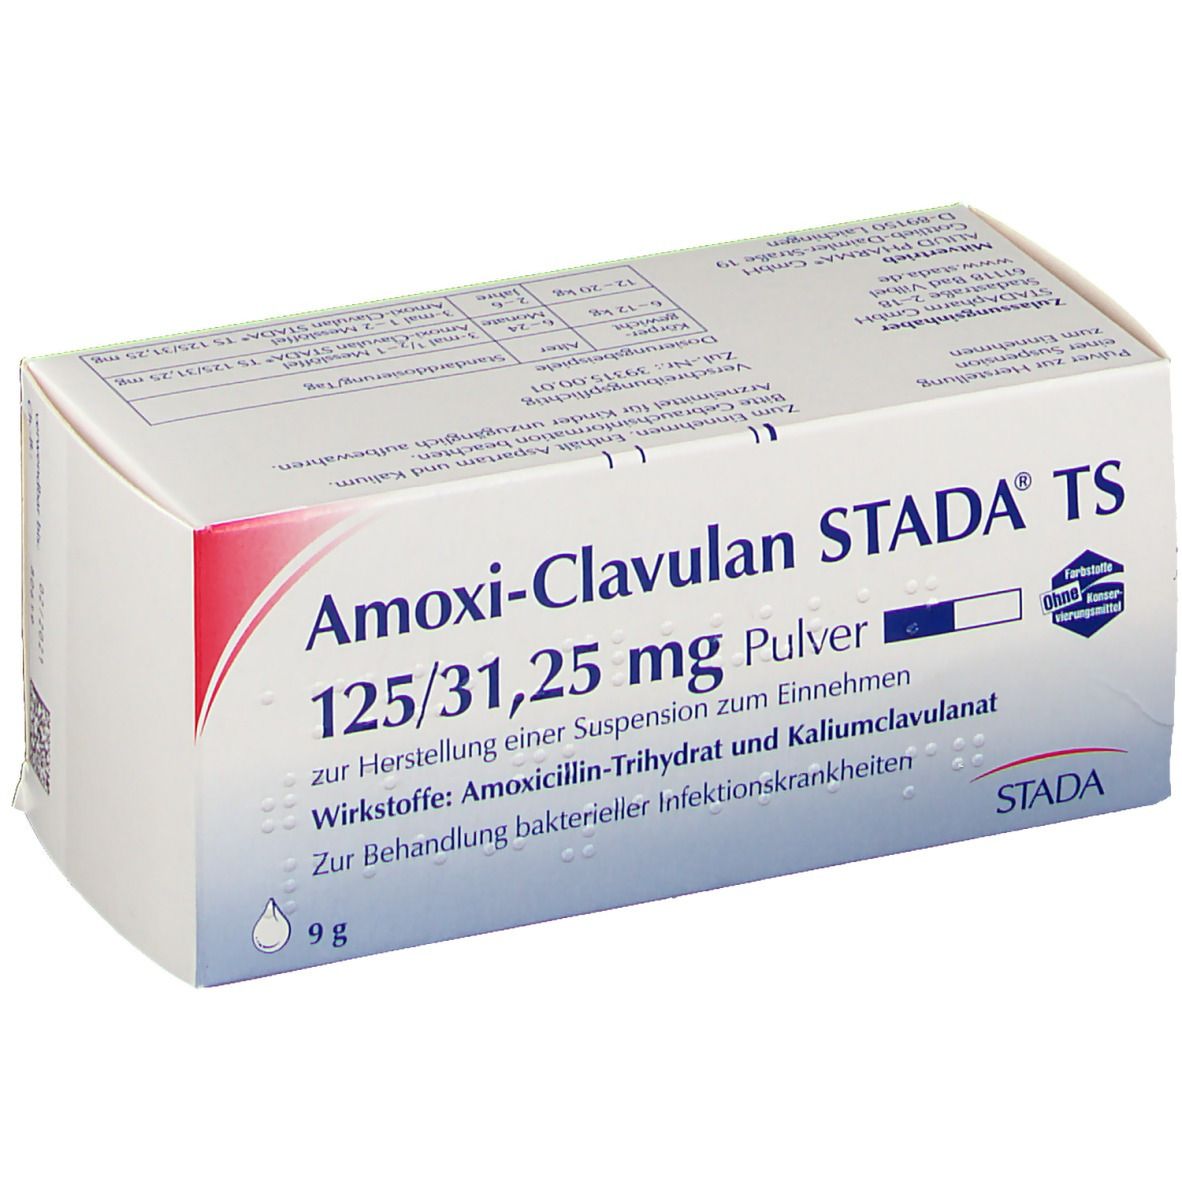 Amoxi-Clavulan STADA® TS 125/31,25 mg Pulver